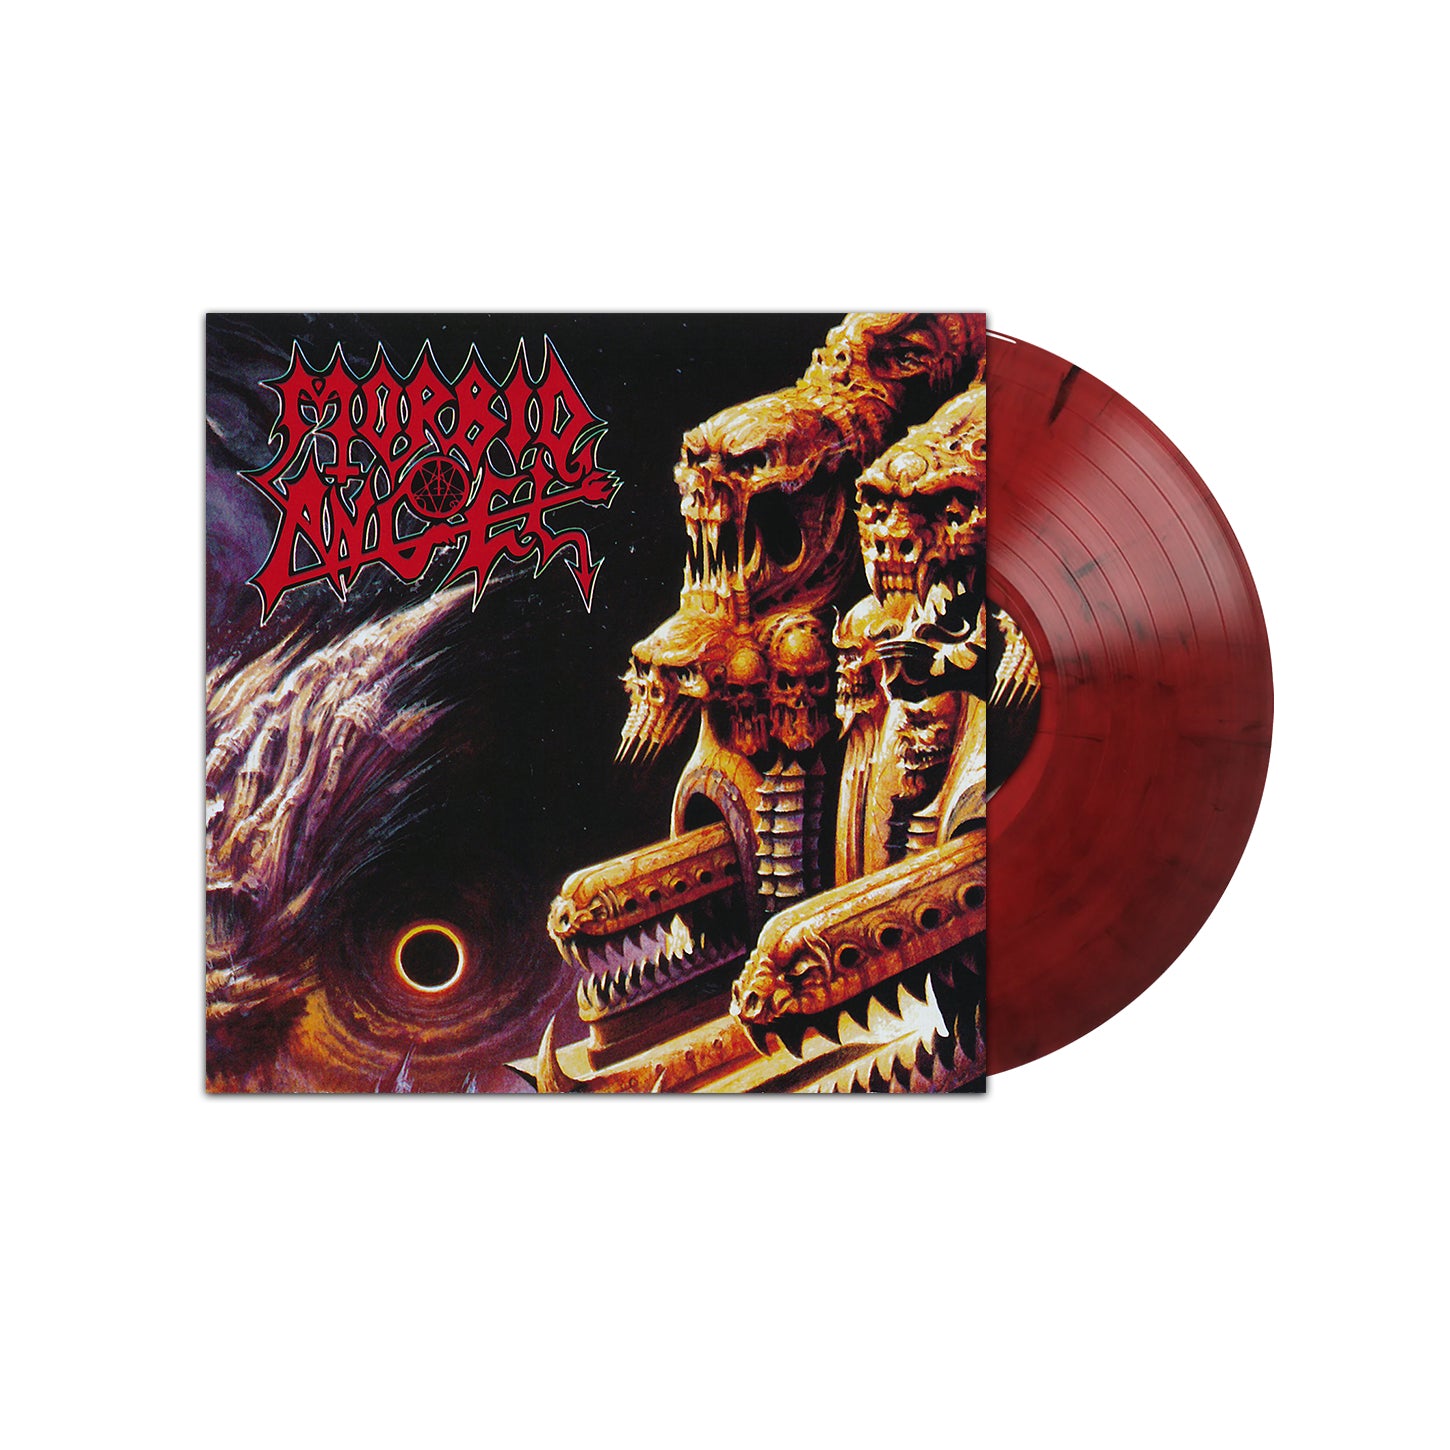 Morbid Angel "Gateways To Annihilation" Red / Black Marble Vinyl